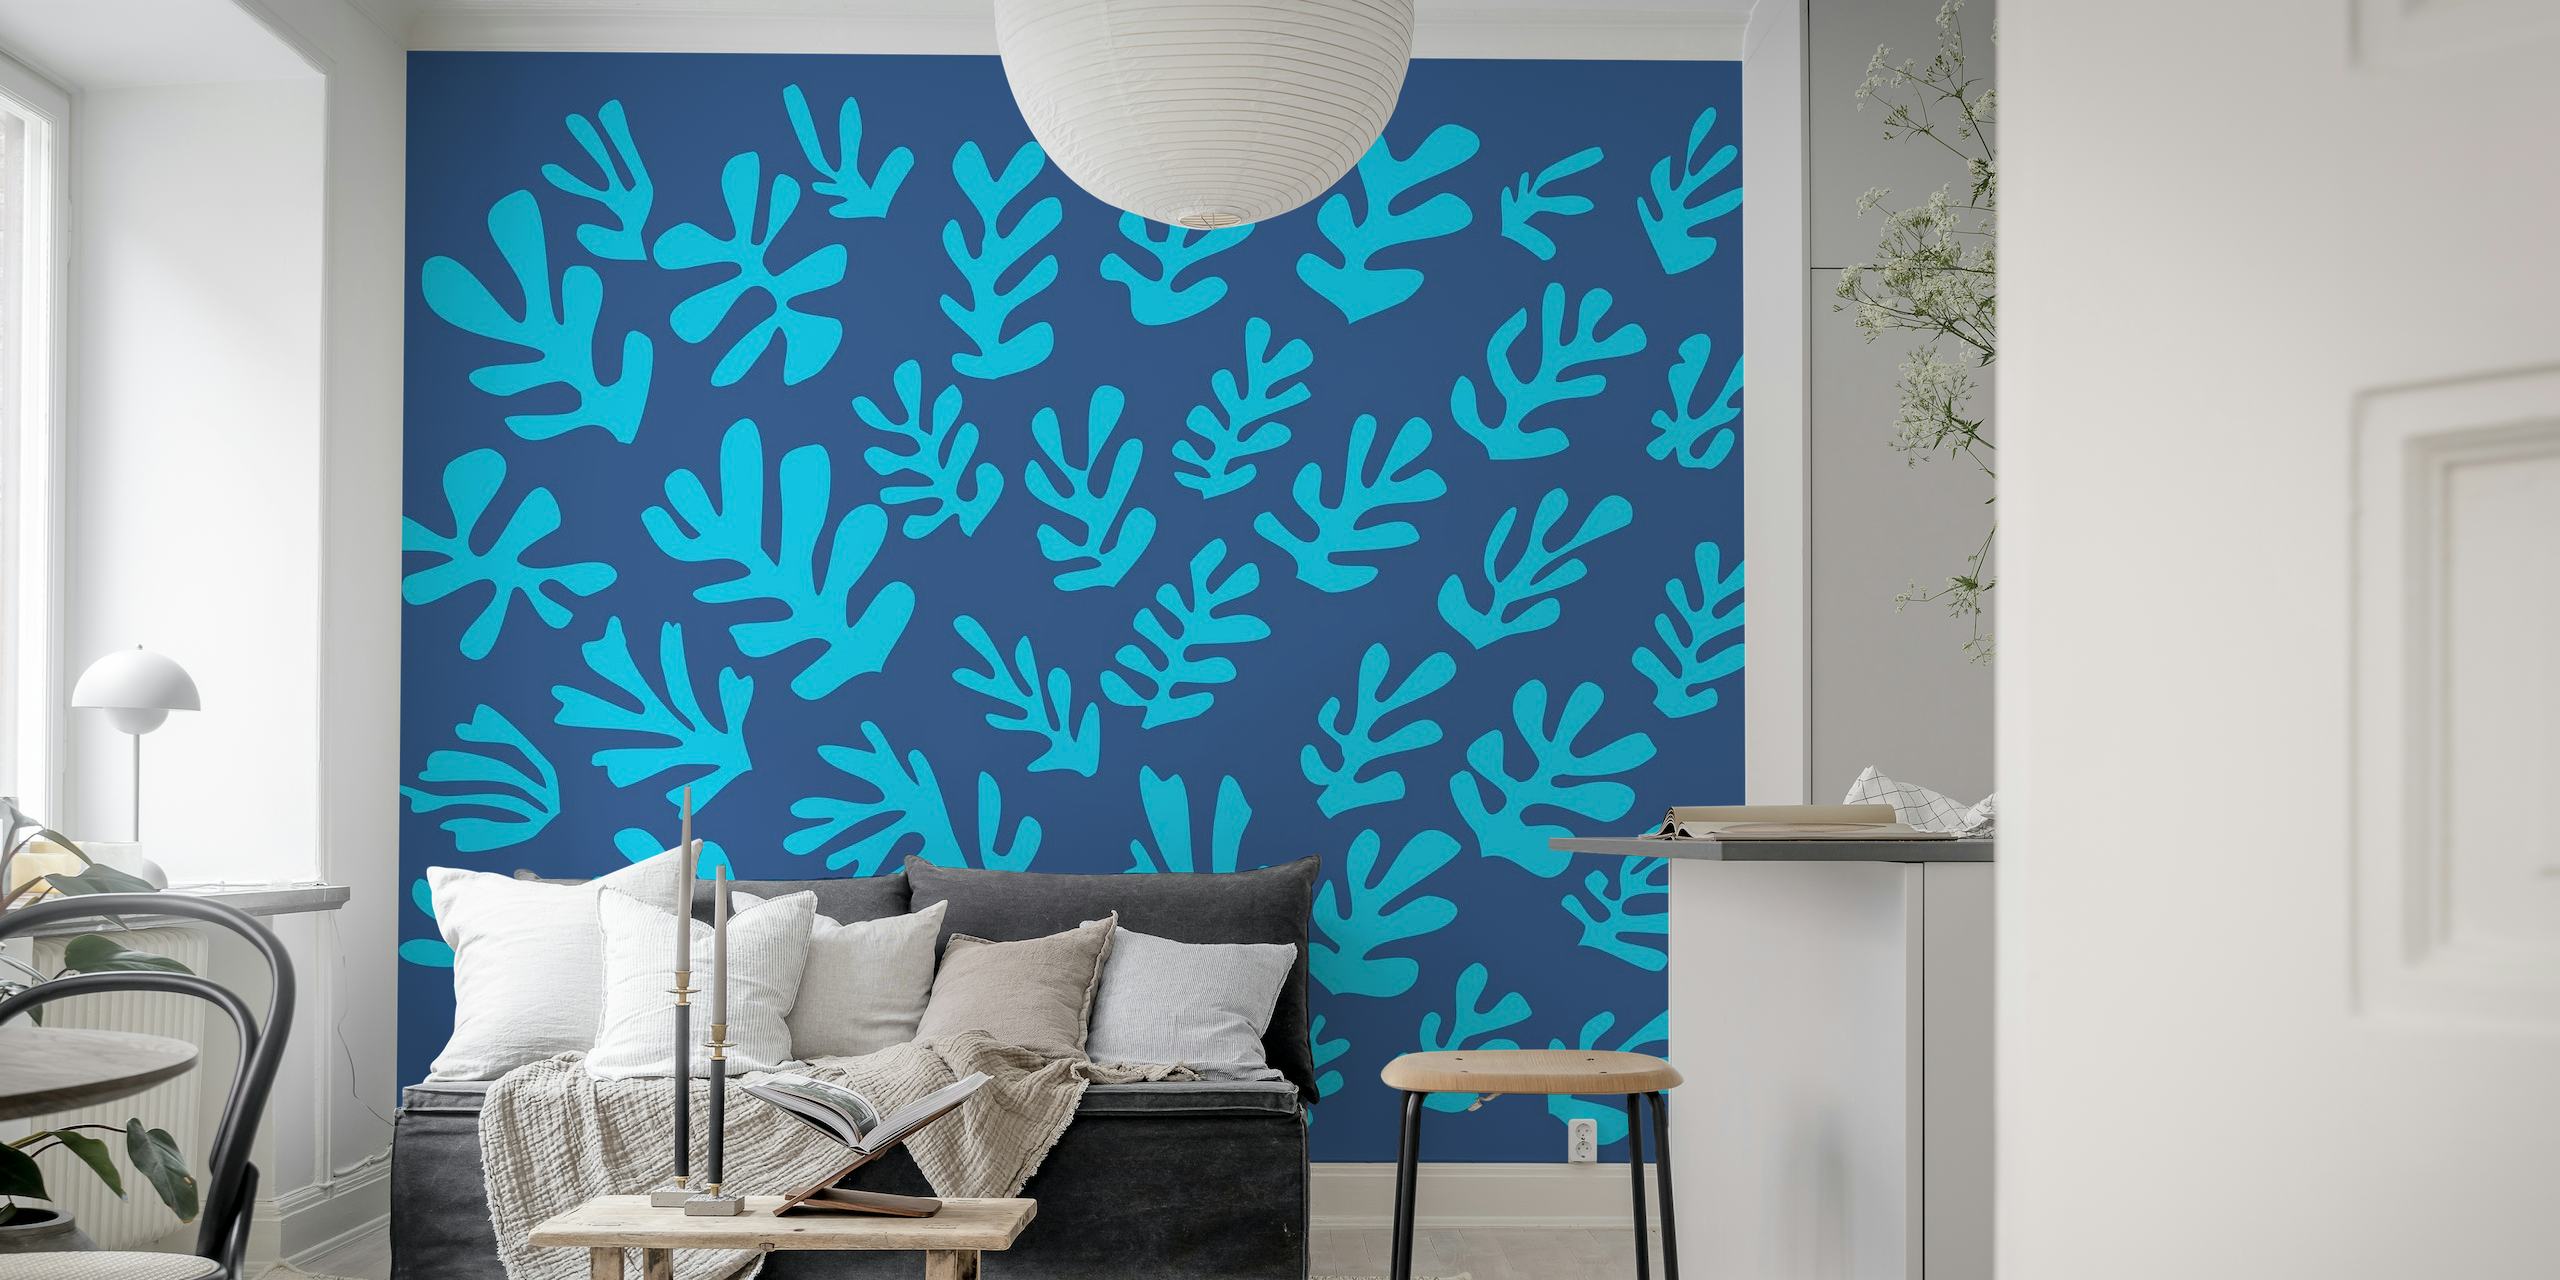 Minimalistische Matisse-stijl blauwe bladeren muurschildering op een rijke achtergrond.